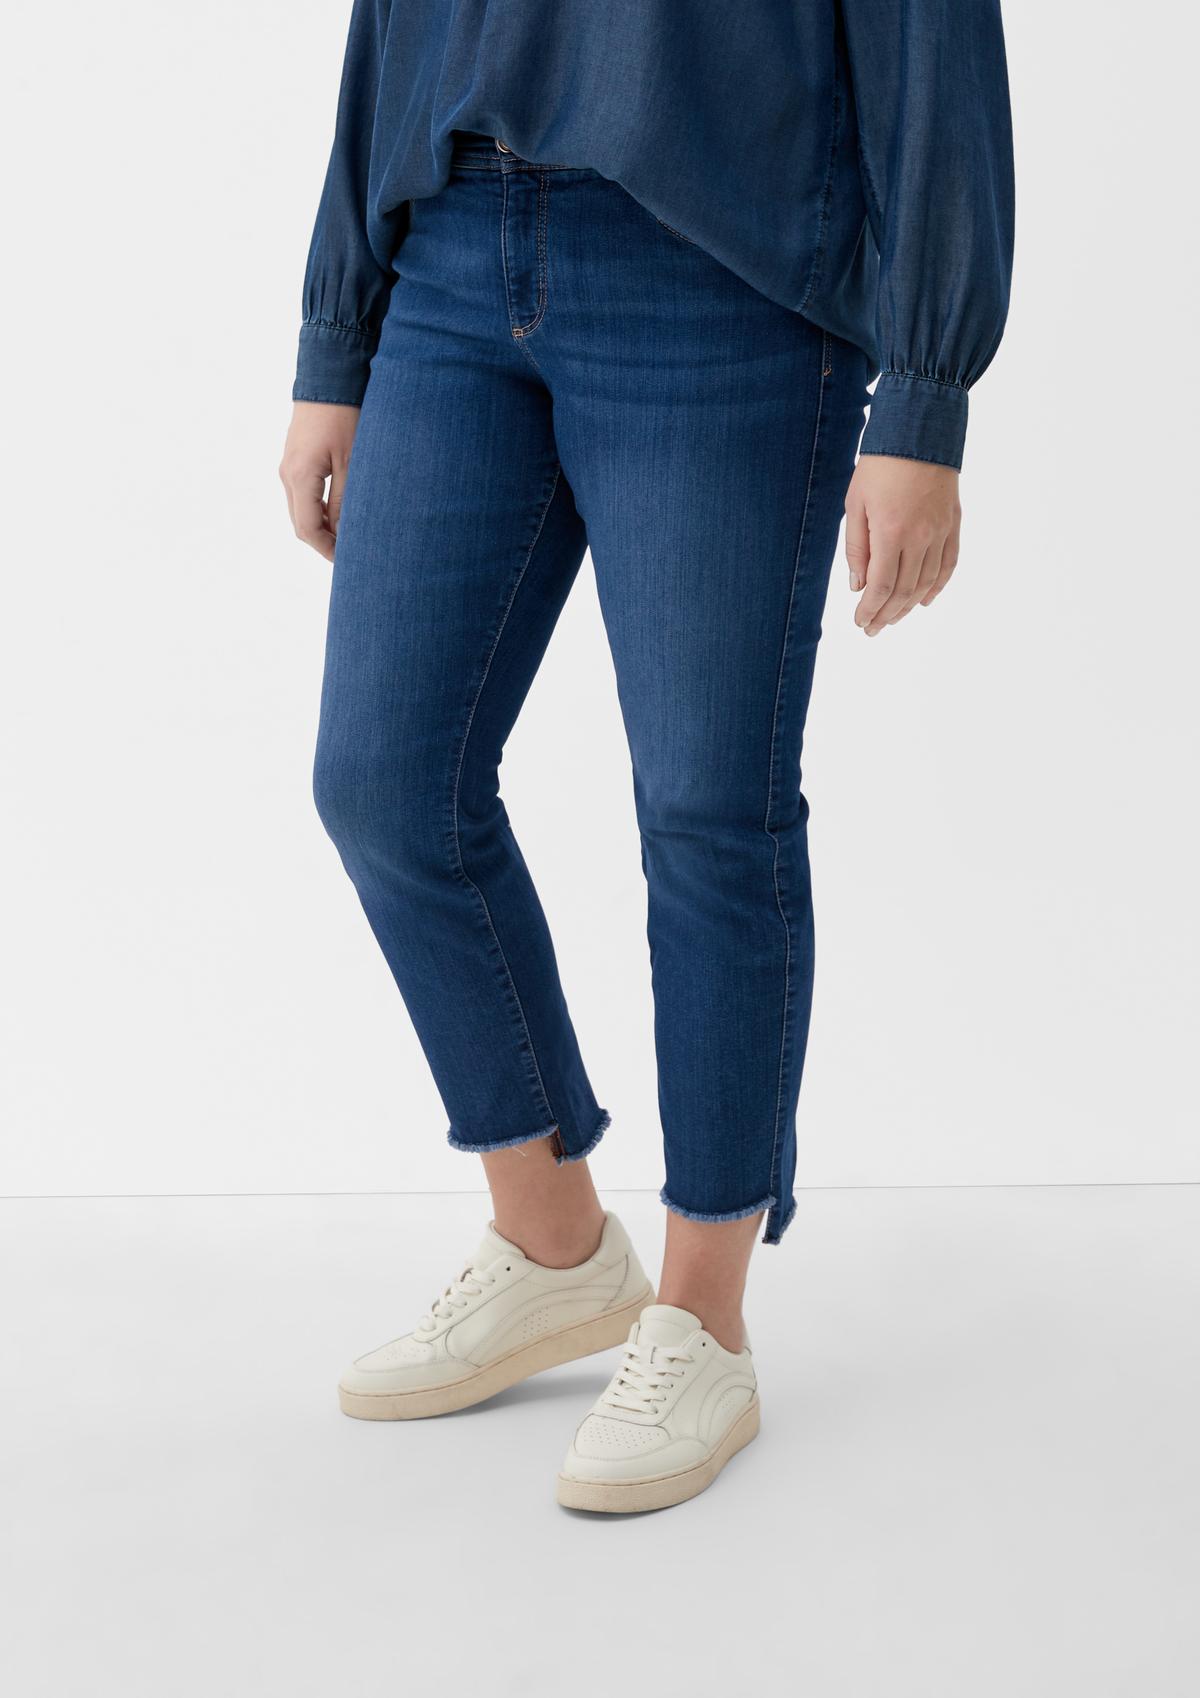 Ankle Jeans hlače/kroj Slim Fit/Mid Rise/ozke hlačnice